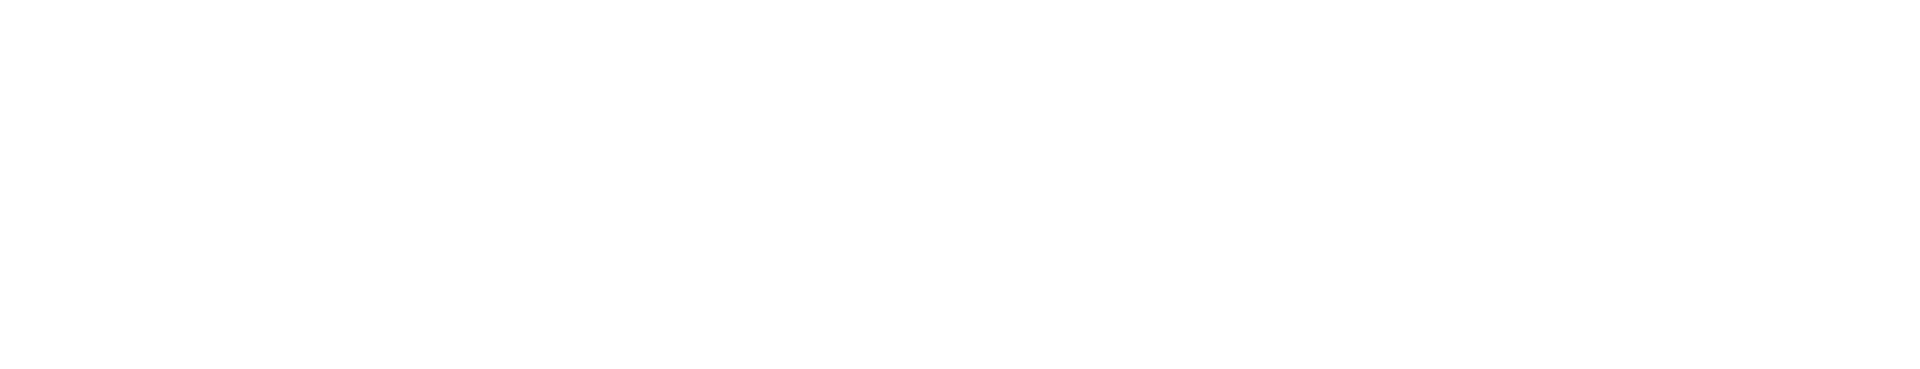 Covet logo white